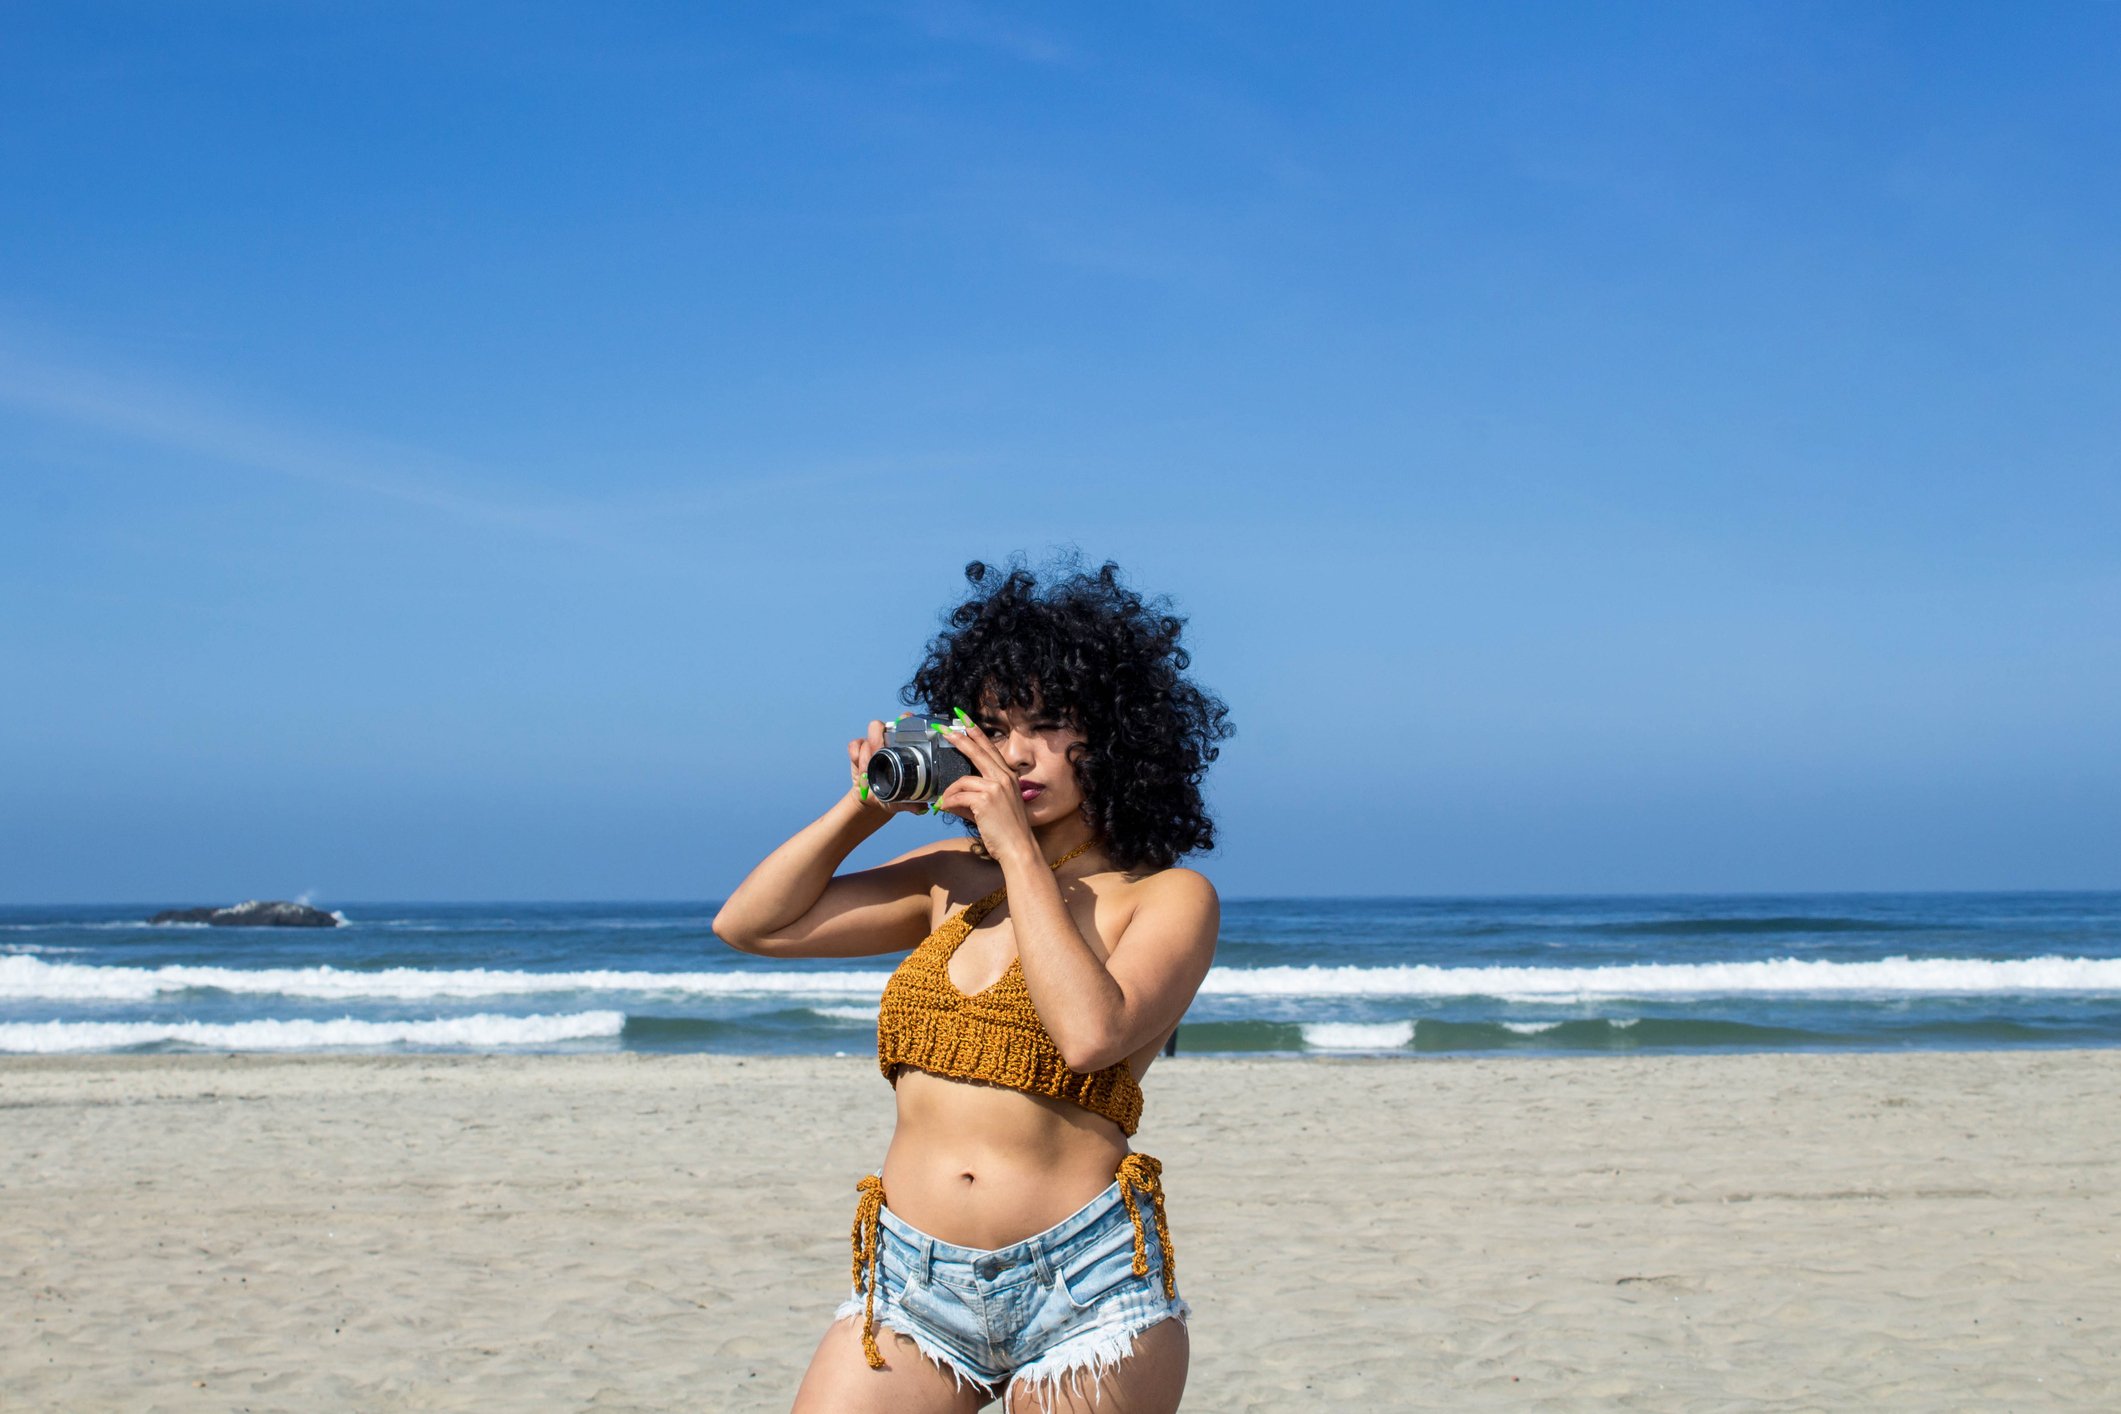 mulher com biquíni de crochê e short jeans na praia usando máquina fotográfica